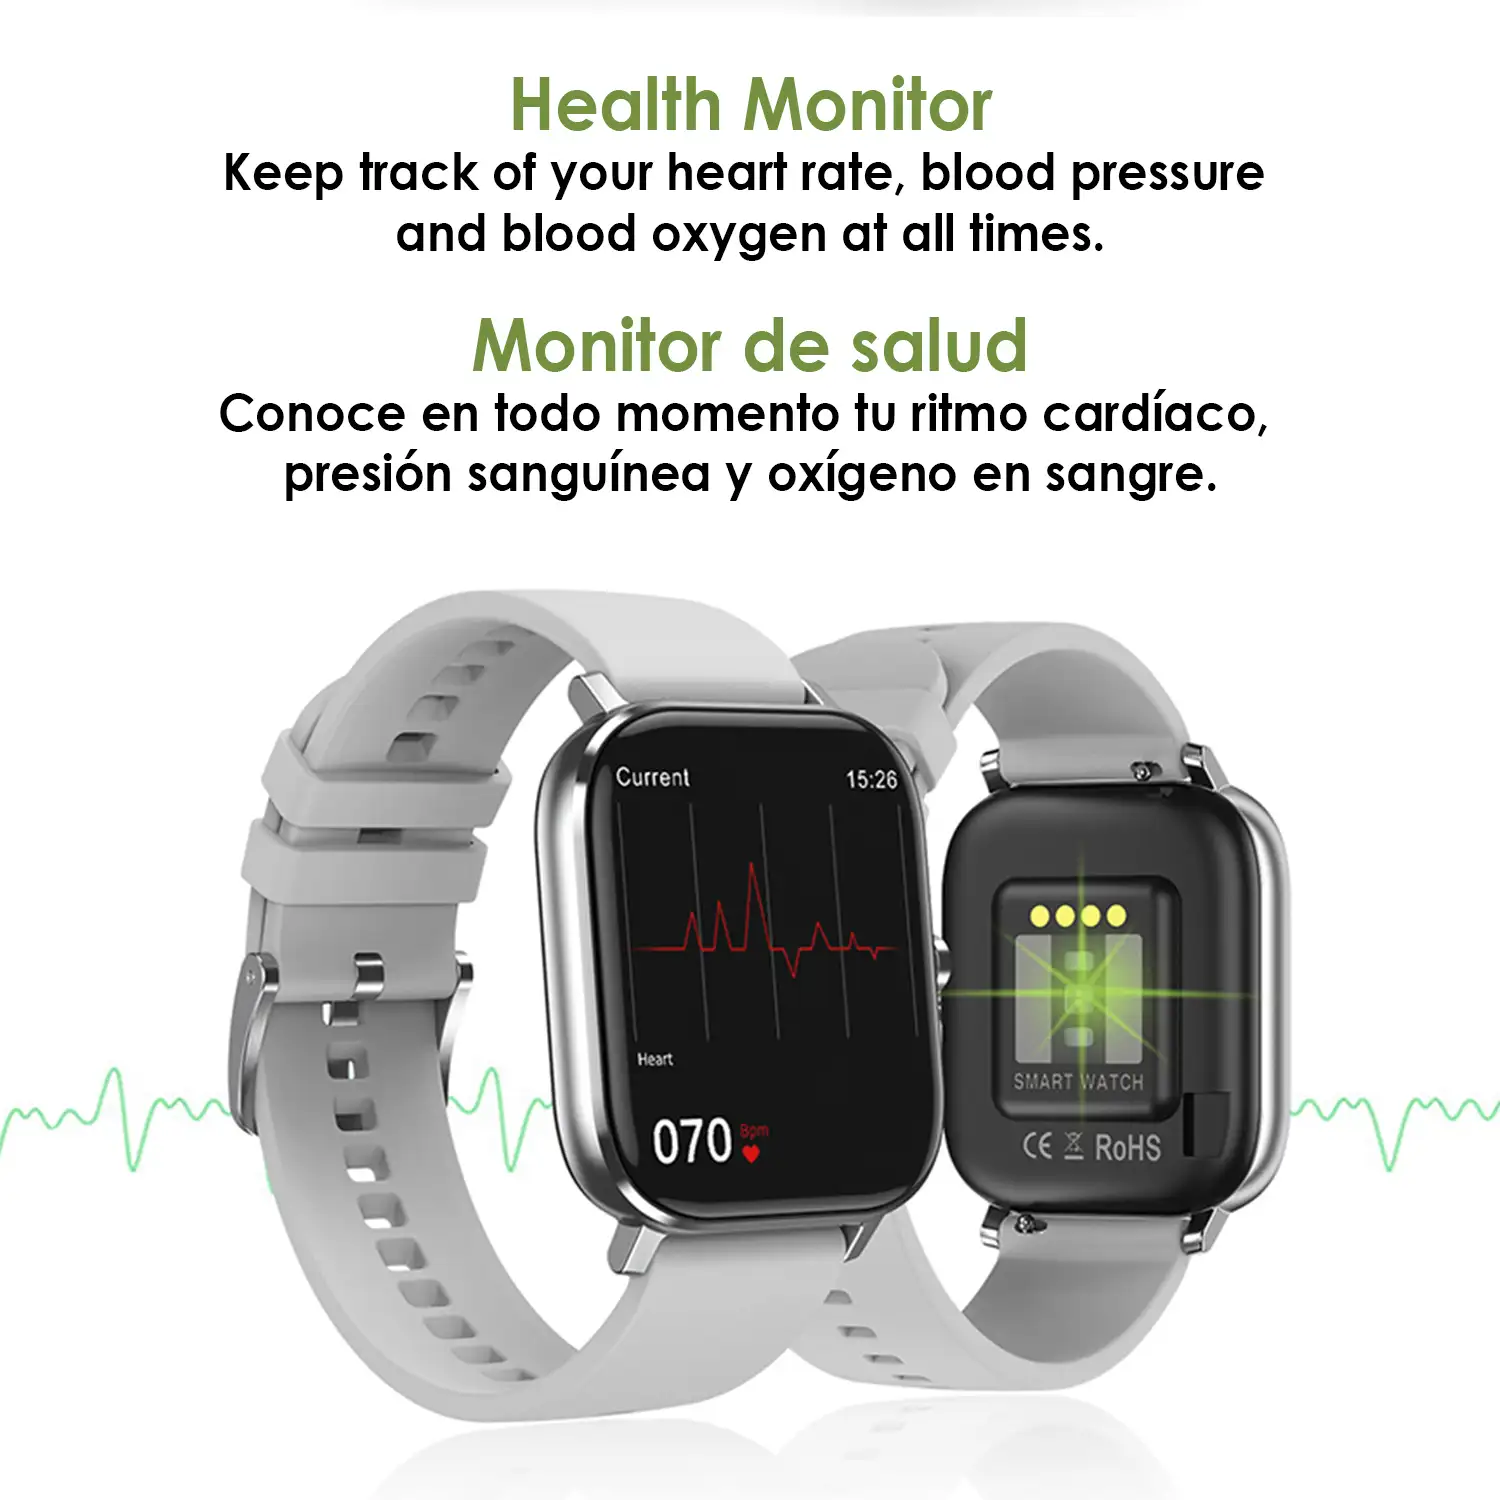 Smartwatch DT35+ con termómetro, monitor de tensión y oxígeno en sangre. Notificaciones en pantalla iOS y Android.